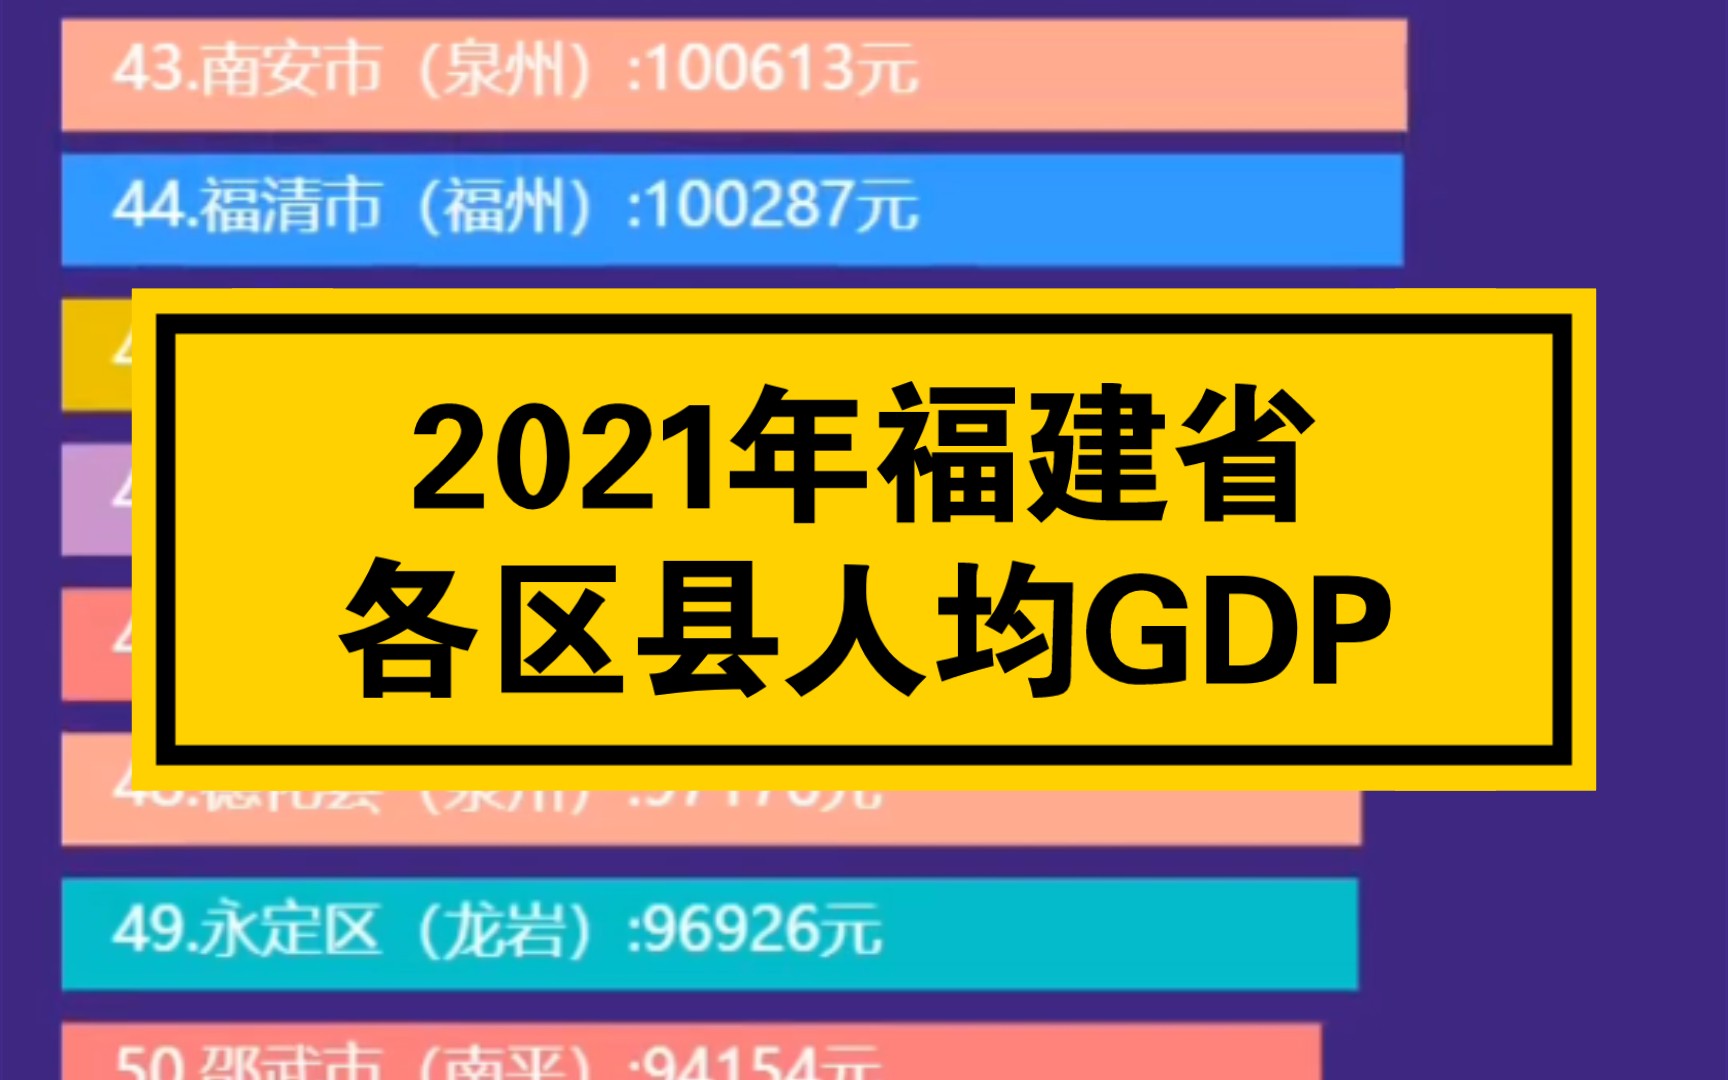 2021年福建各区县人均GDP排名